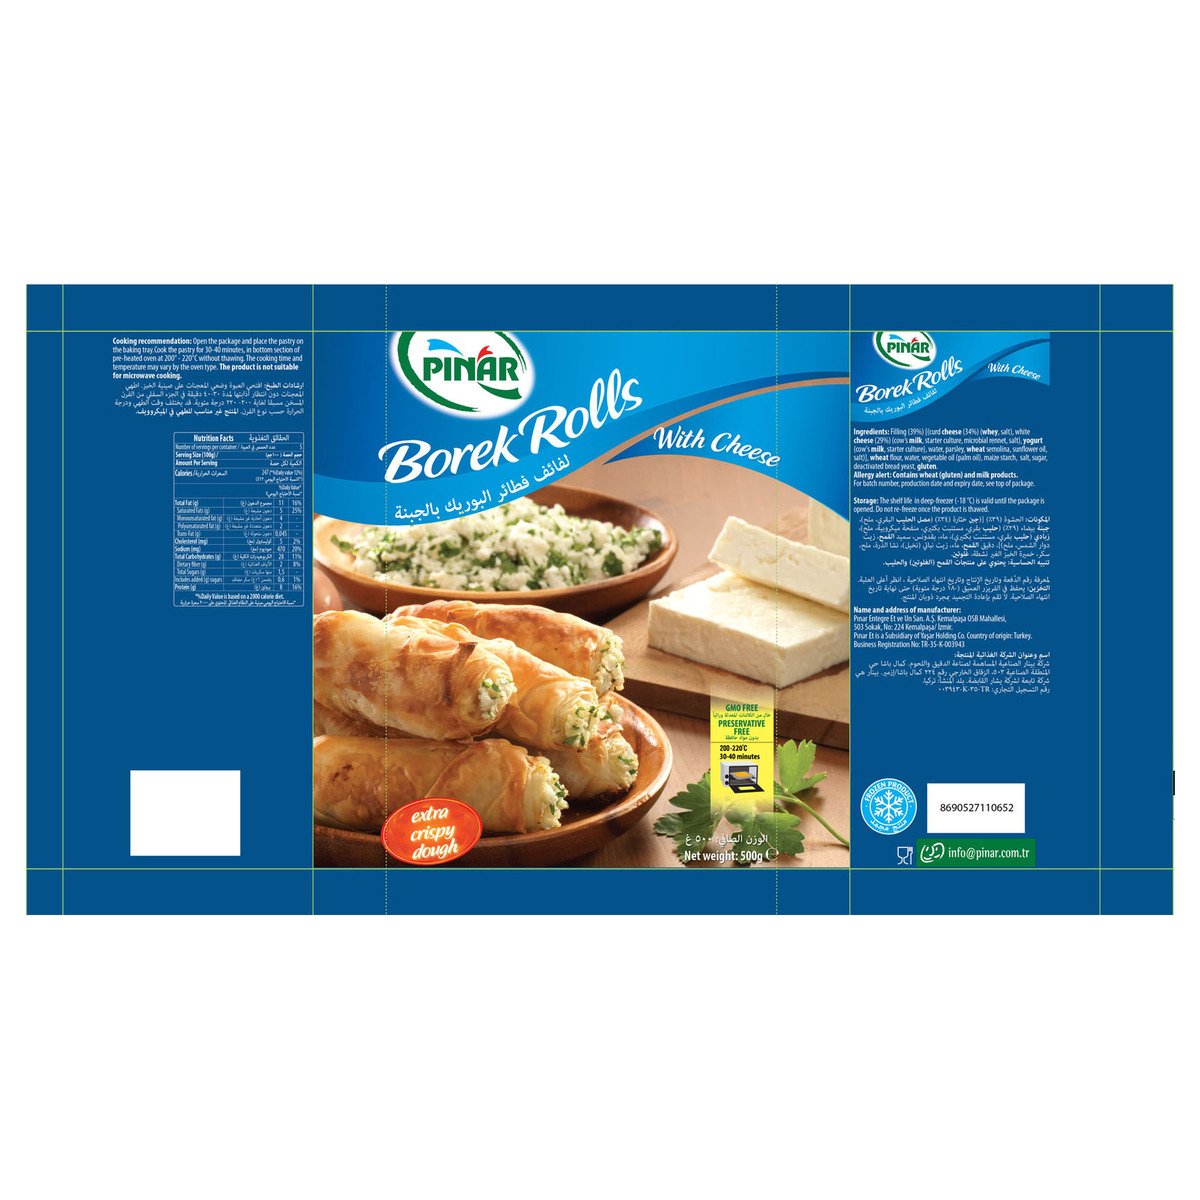 Pinar Borek Roll Cheese 500 g